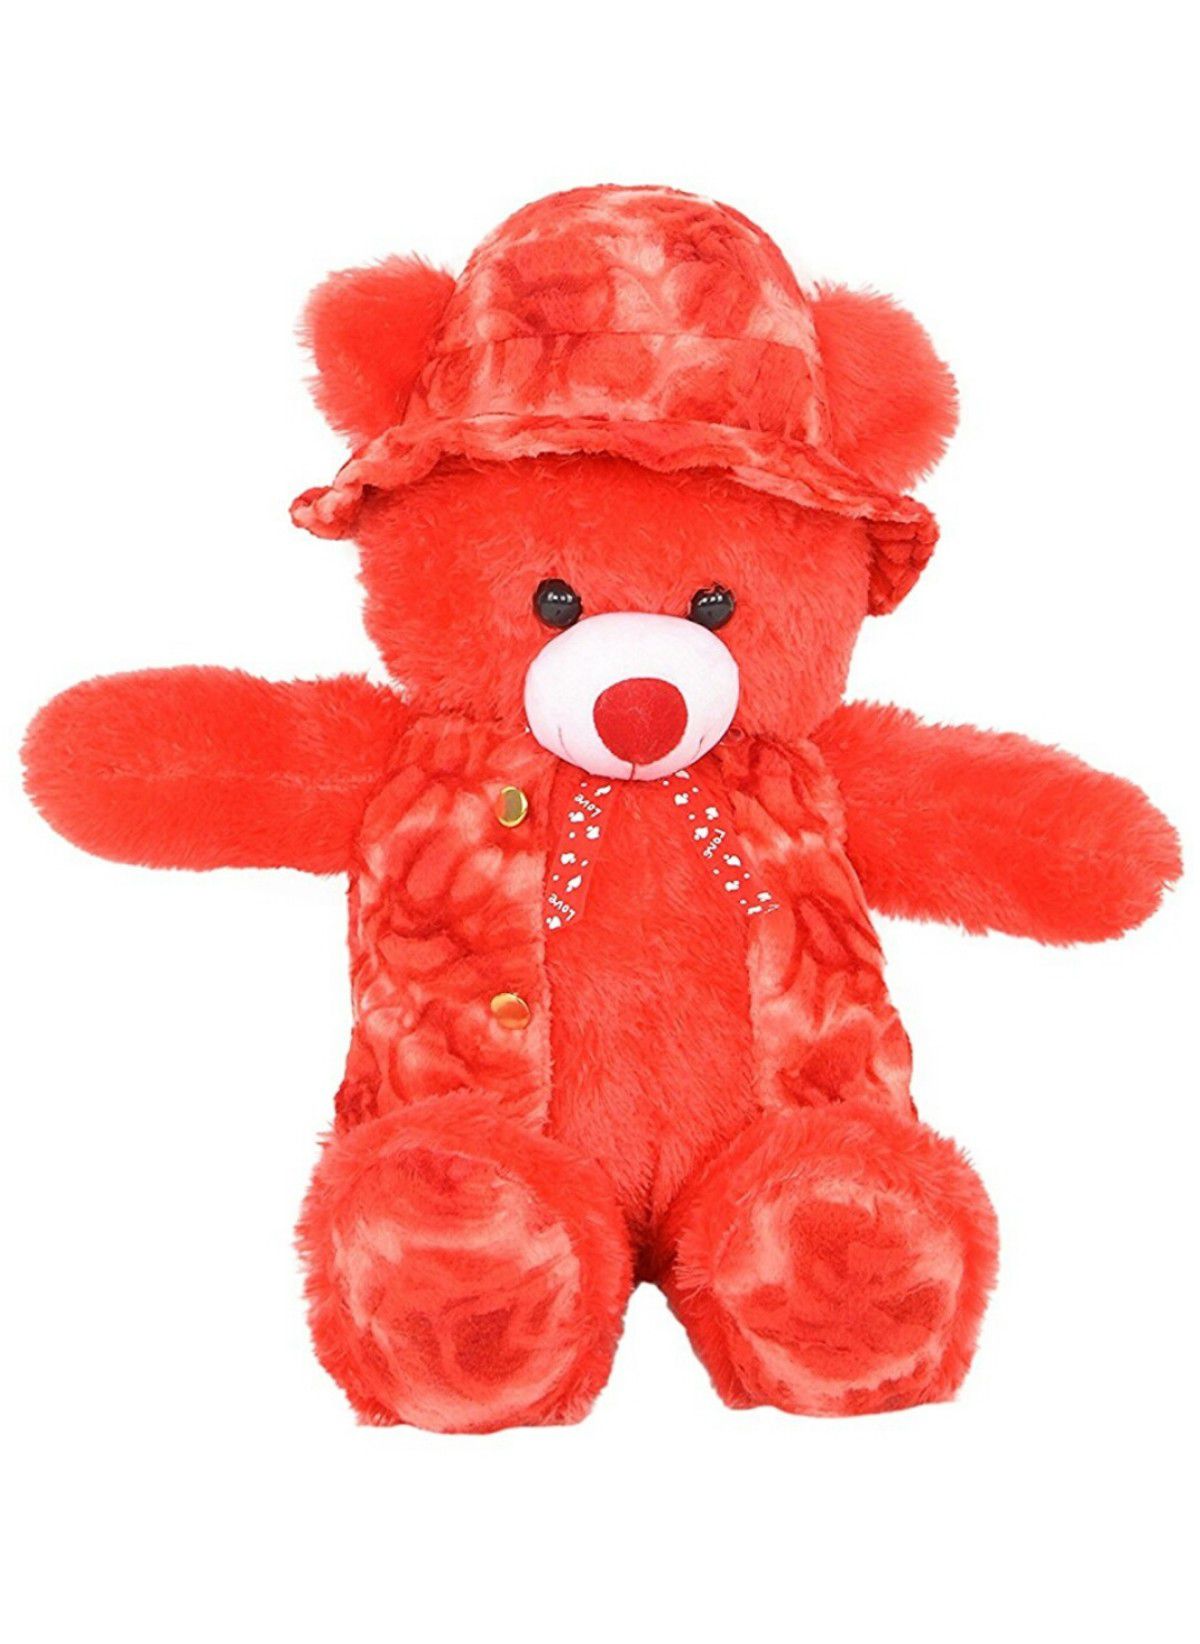 teddy bear on snapdeal